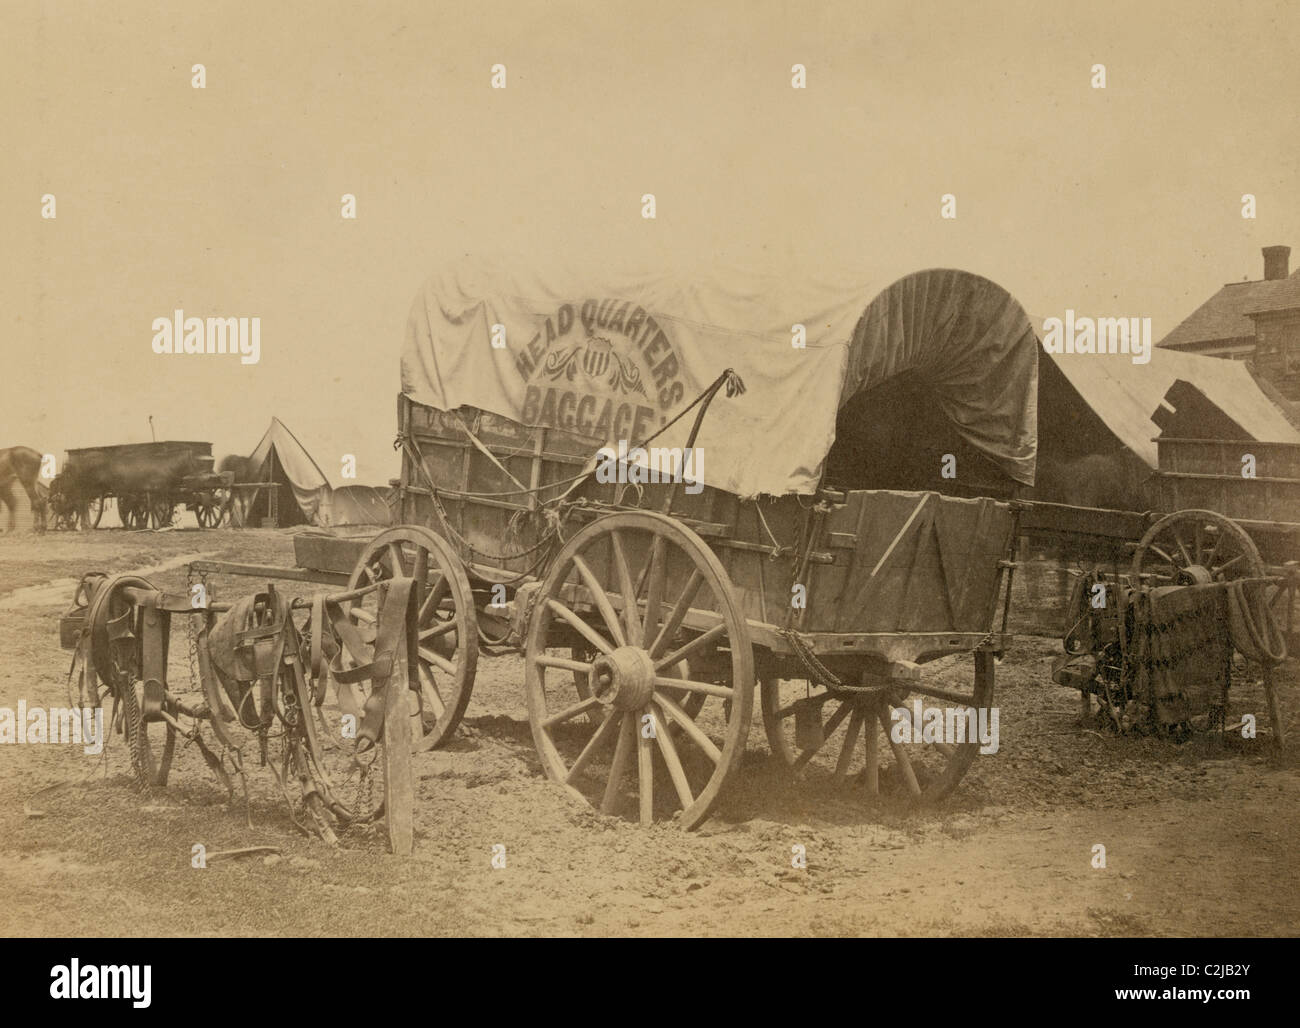 Planwagen für "Zentrale Gepäck" und Sattlerei, wahrscheinlich ein Bürgerkrieg Militärlager Stockfoto